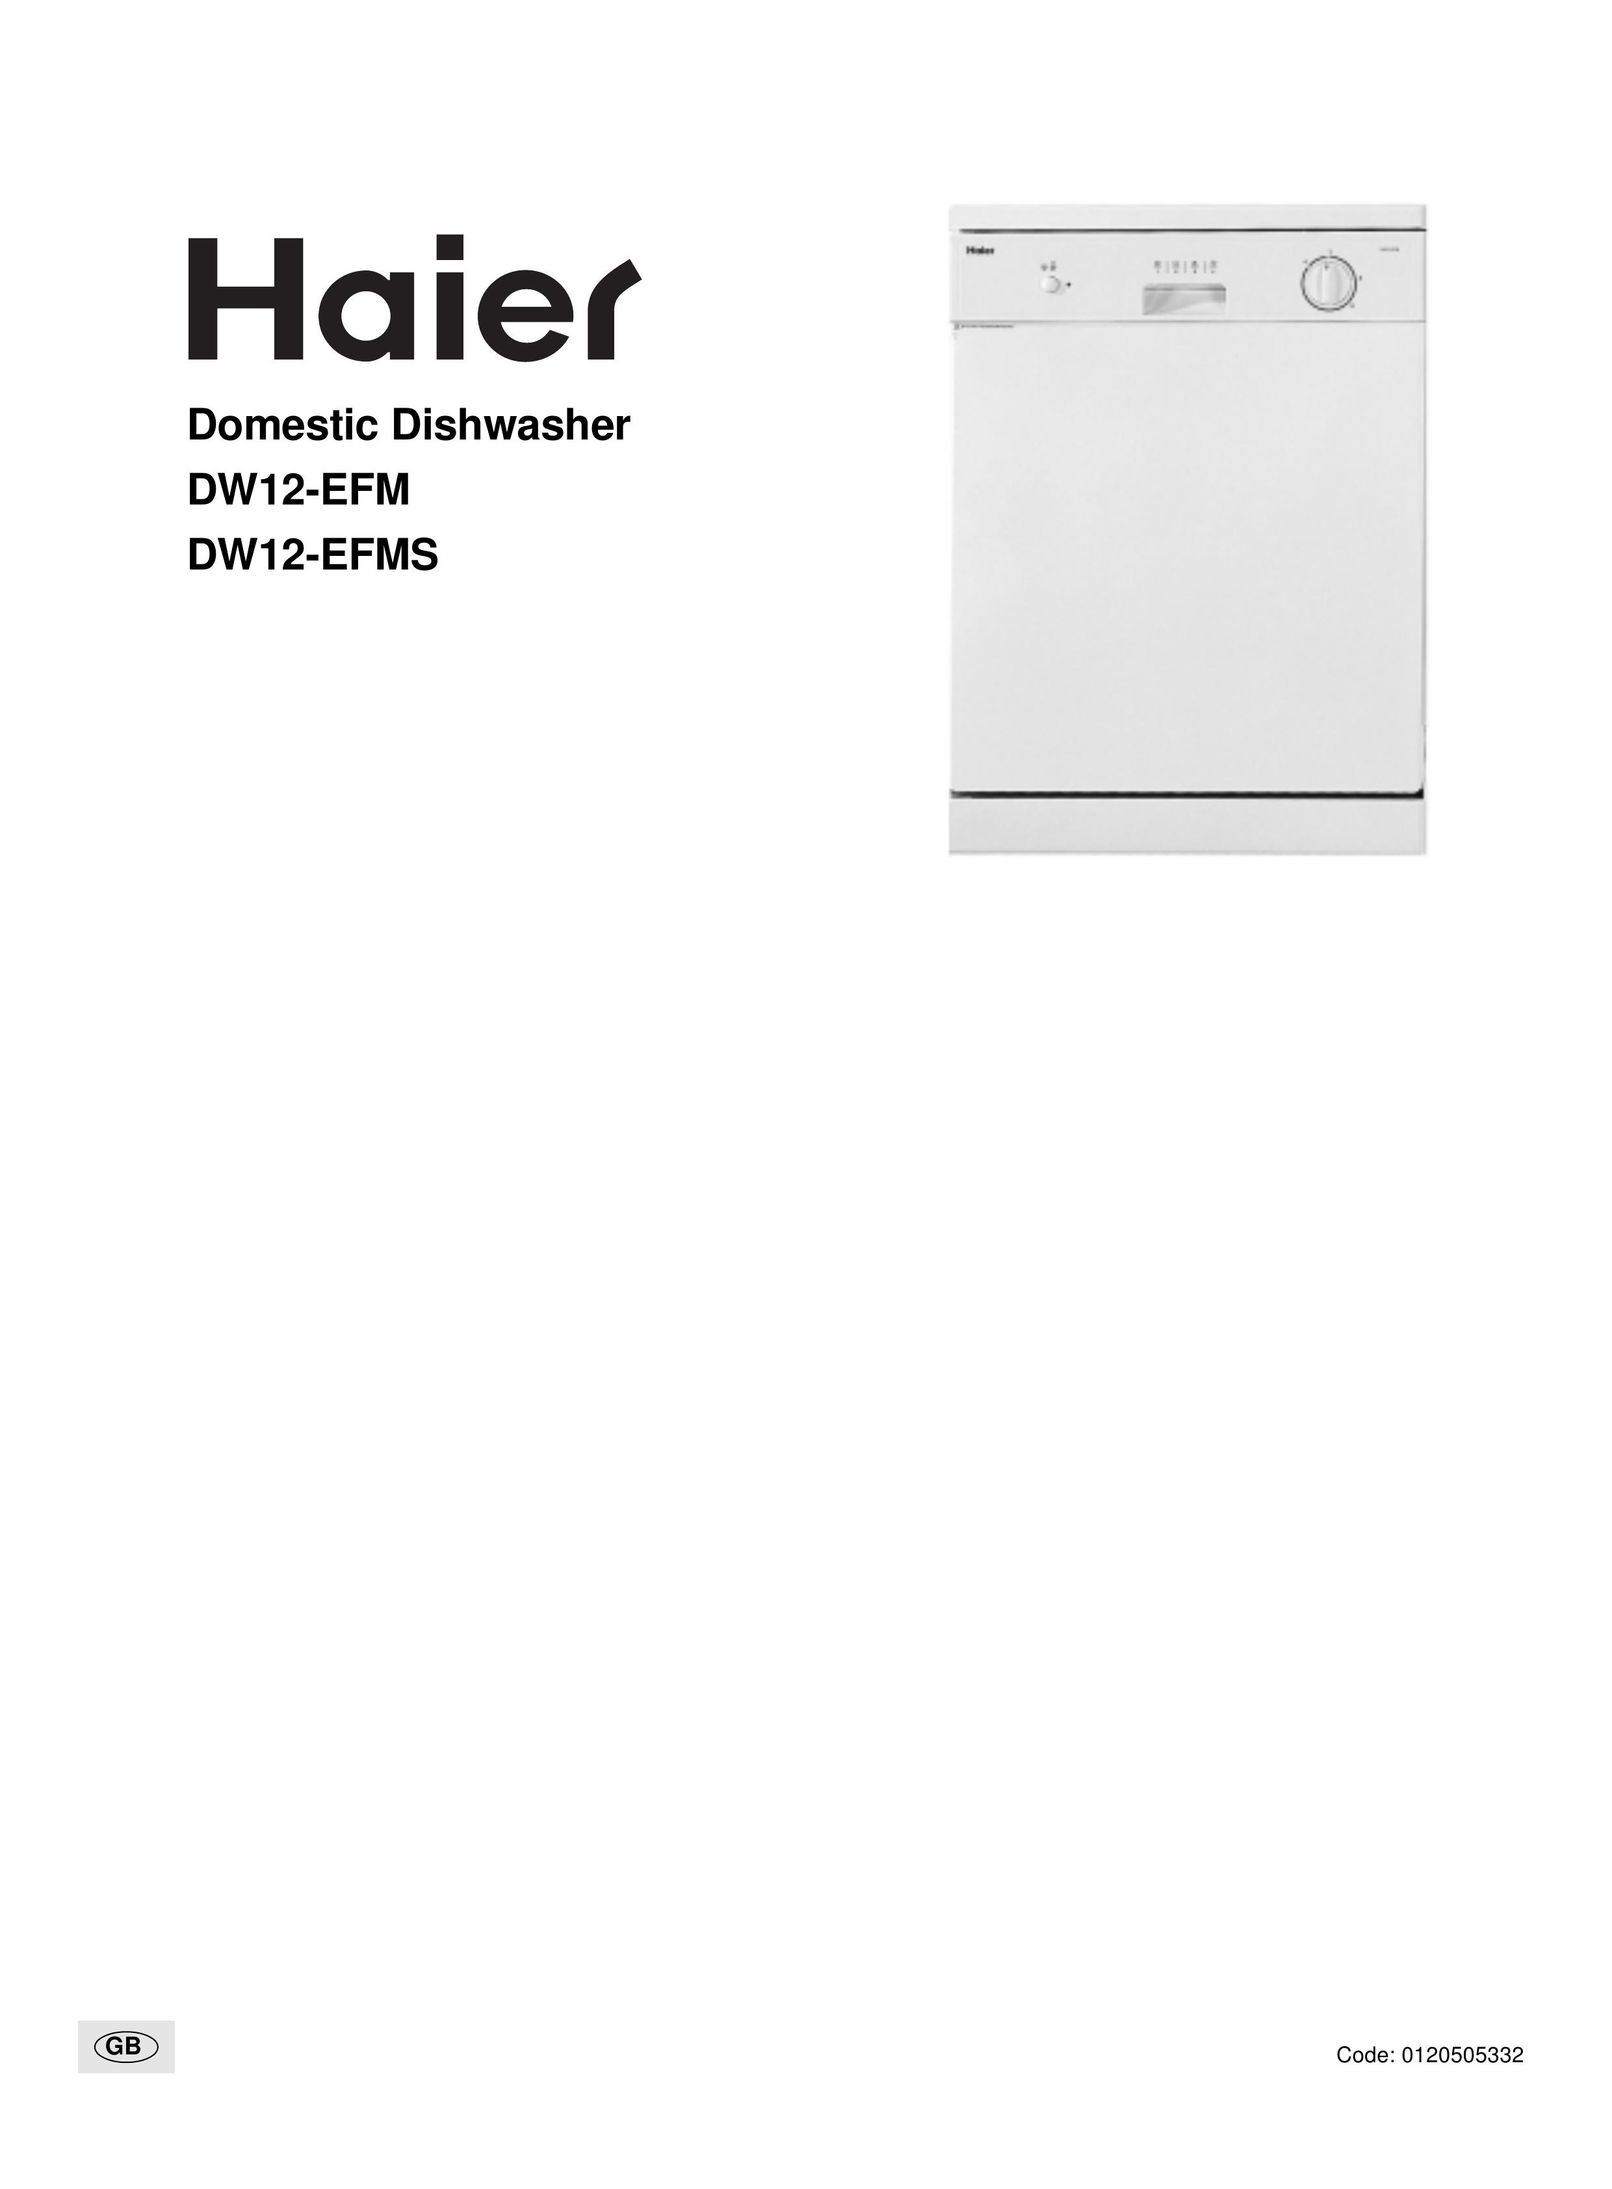 Haier DW12-EFM Dishwasher User Manual